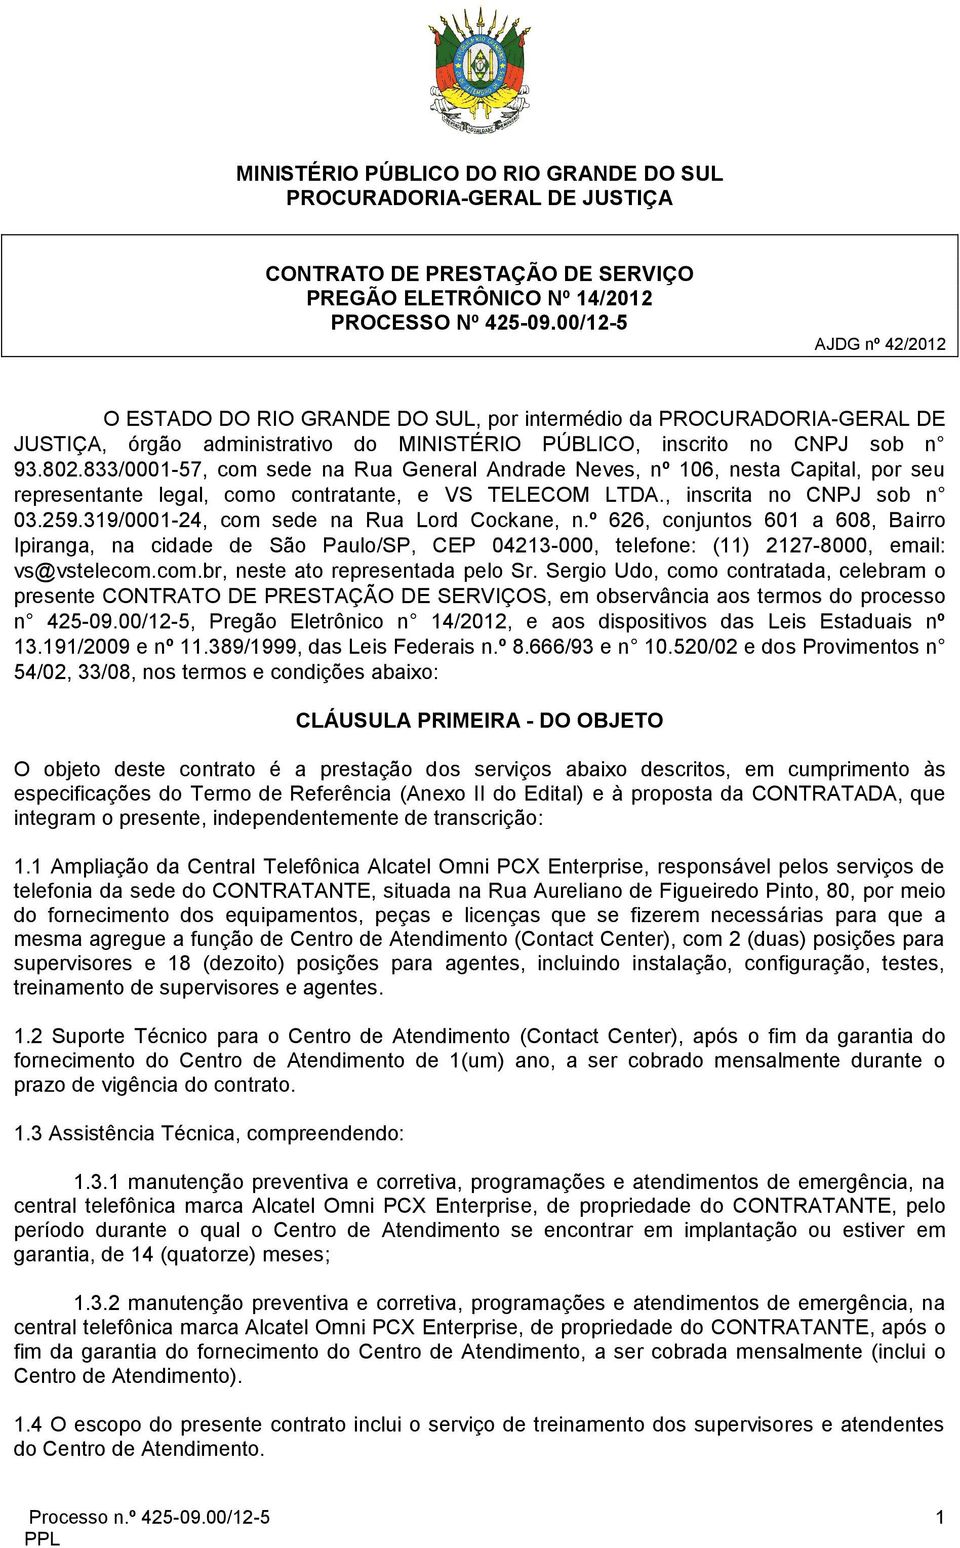 833/0001-57, com sede na Rua General Andrade Neves, nº 106, nesta Capital, por seu representante legal, como contratante, e VS TELECOM LTDA., inscrita no CNPJ sob n 03.259.